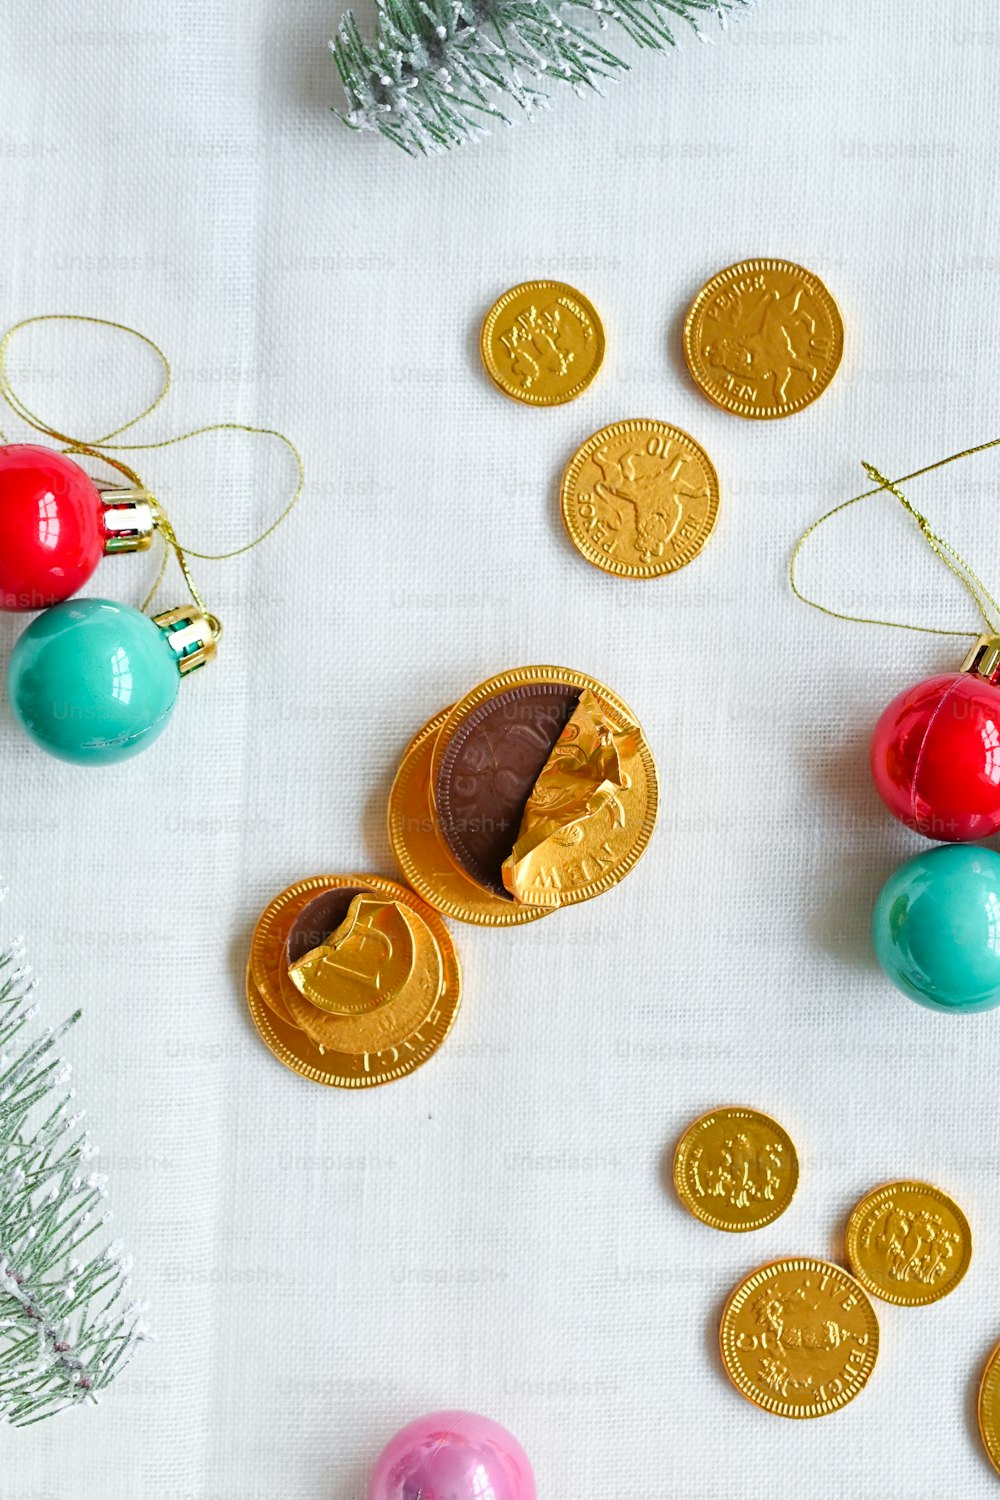 une table surmontée d’ornements de Noël et de pièces de monnaie